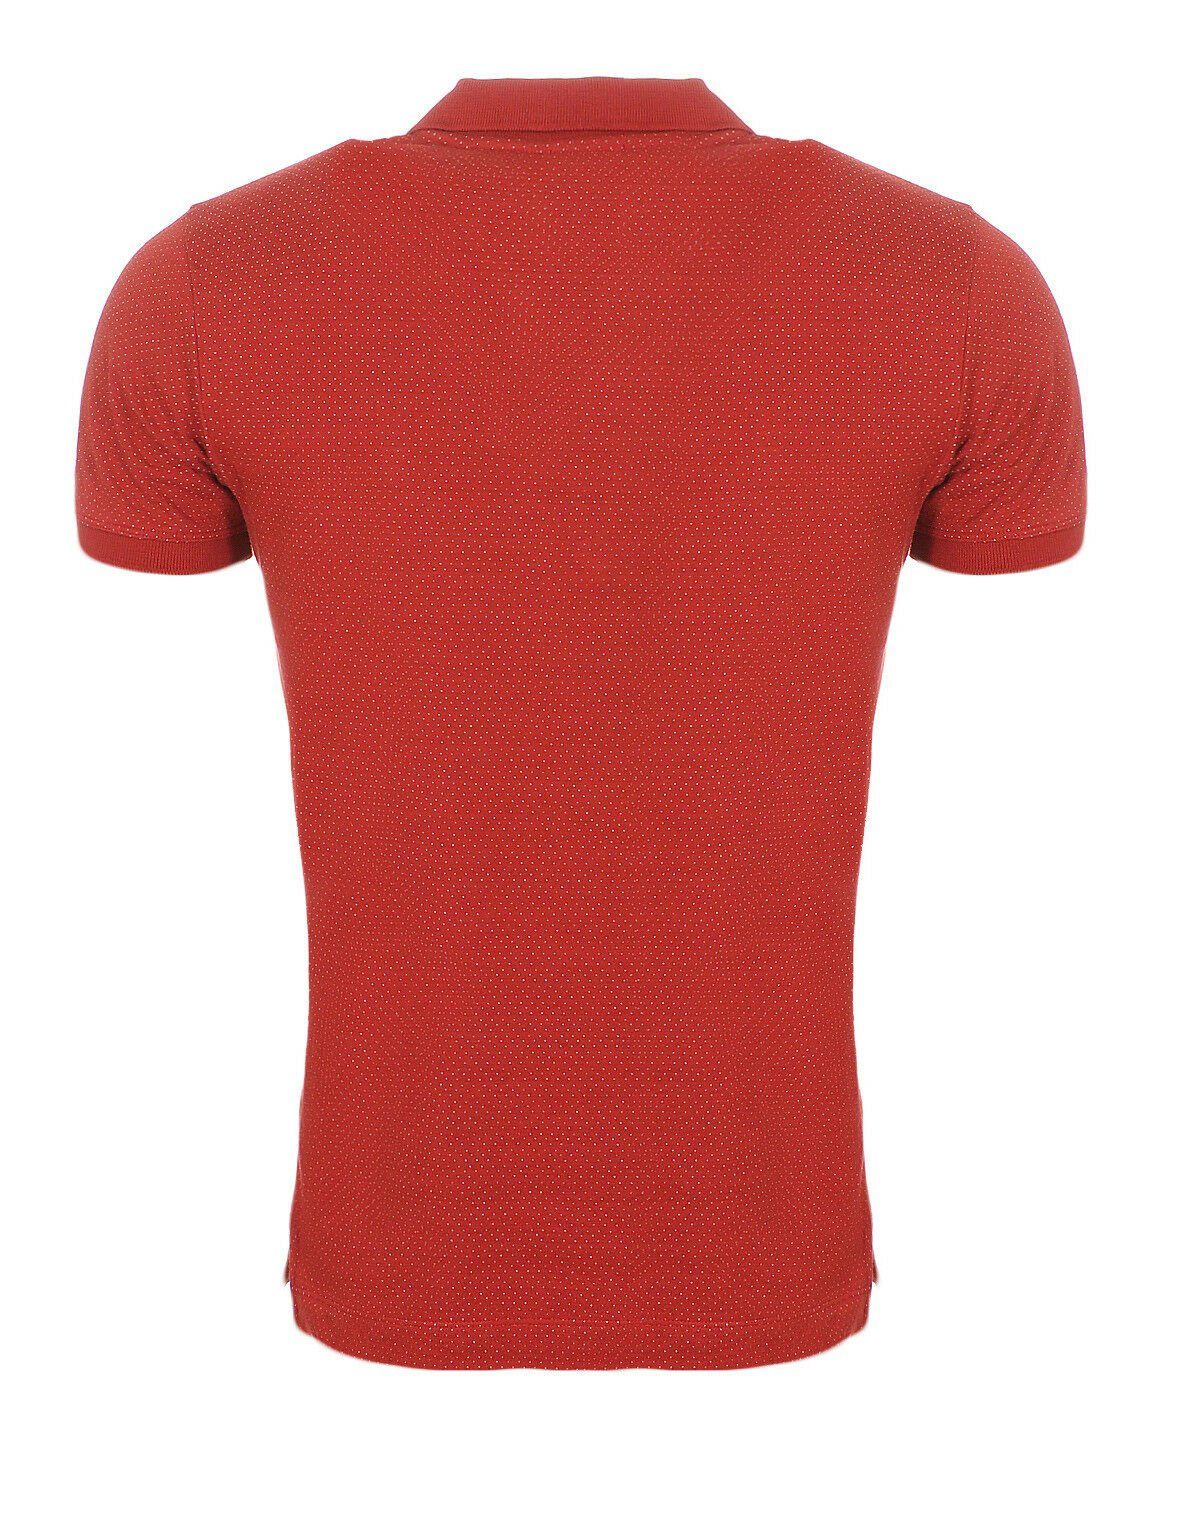 T-KALAR-DOTS Diesel Rundhalsausschnitt, im Brustbereich, Poloshirt Poloshirt Herren Punkte, Muster Diesel unifarben, mit Oberfläche bepunktet Labelstitching Rot